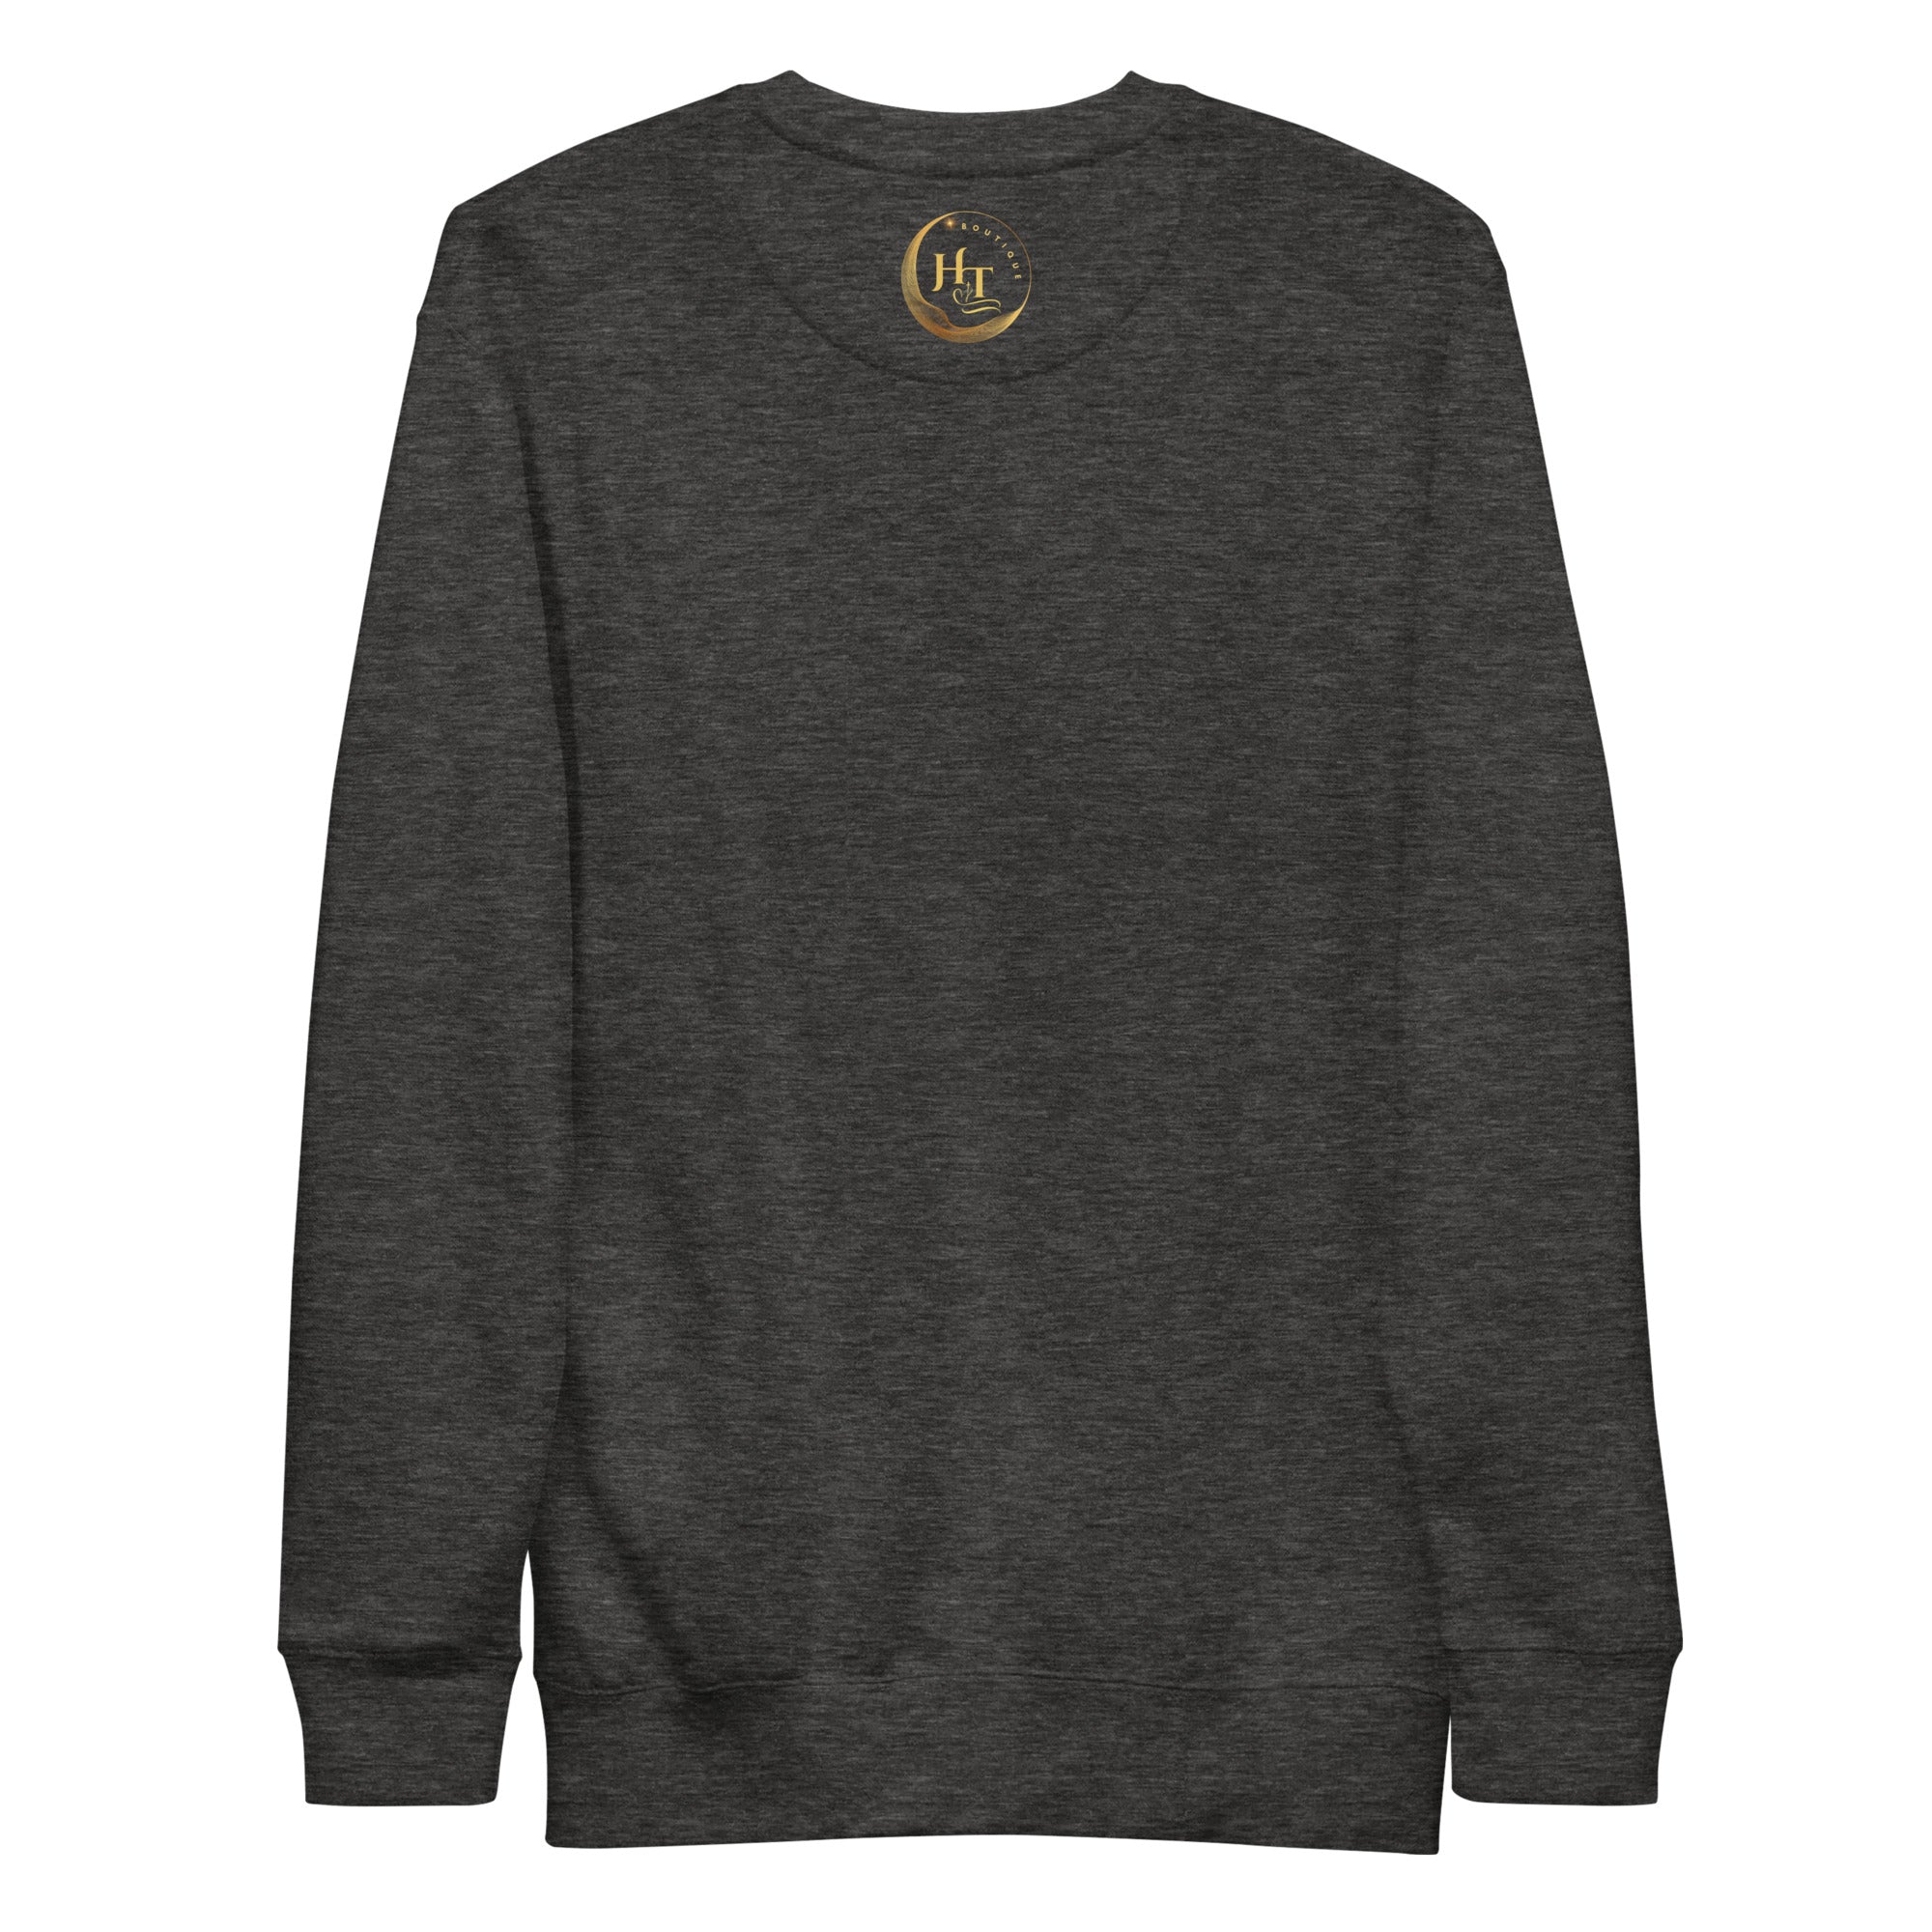 Heartful Threads Unisex Premium Sweatshirt